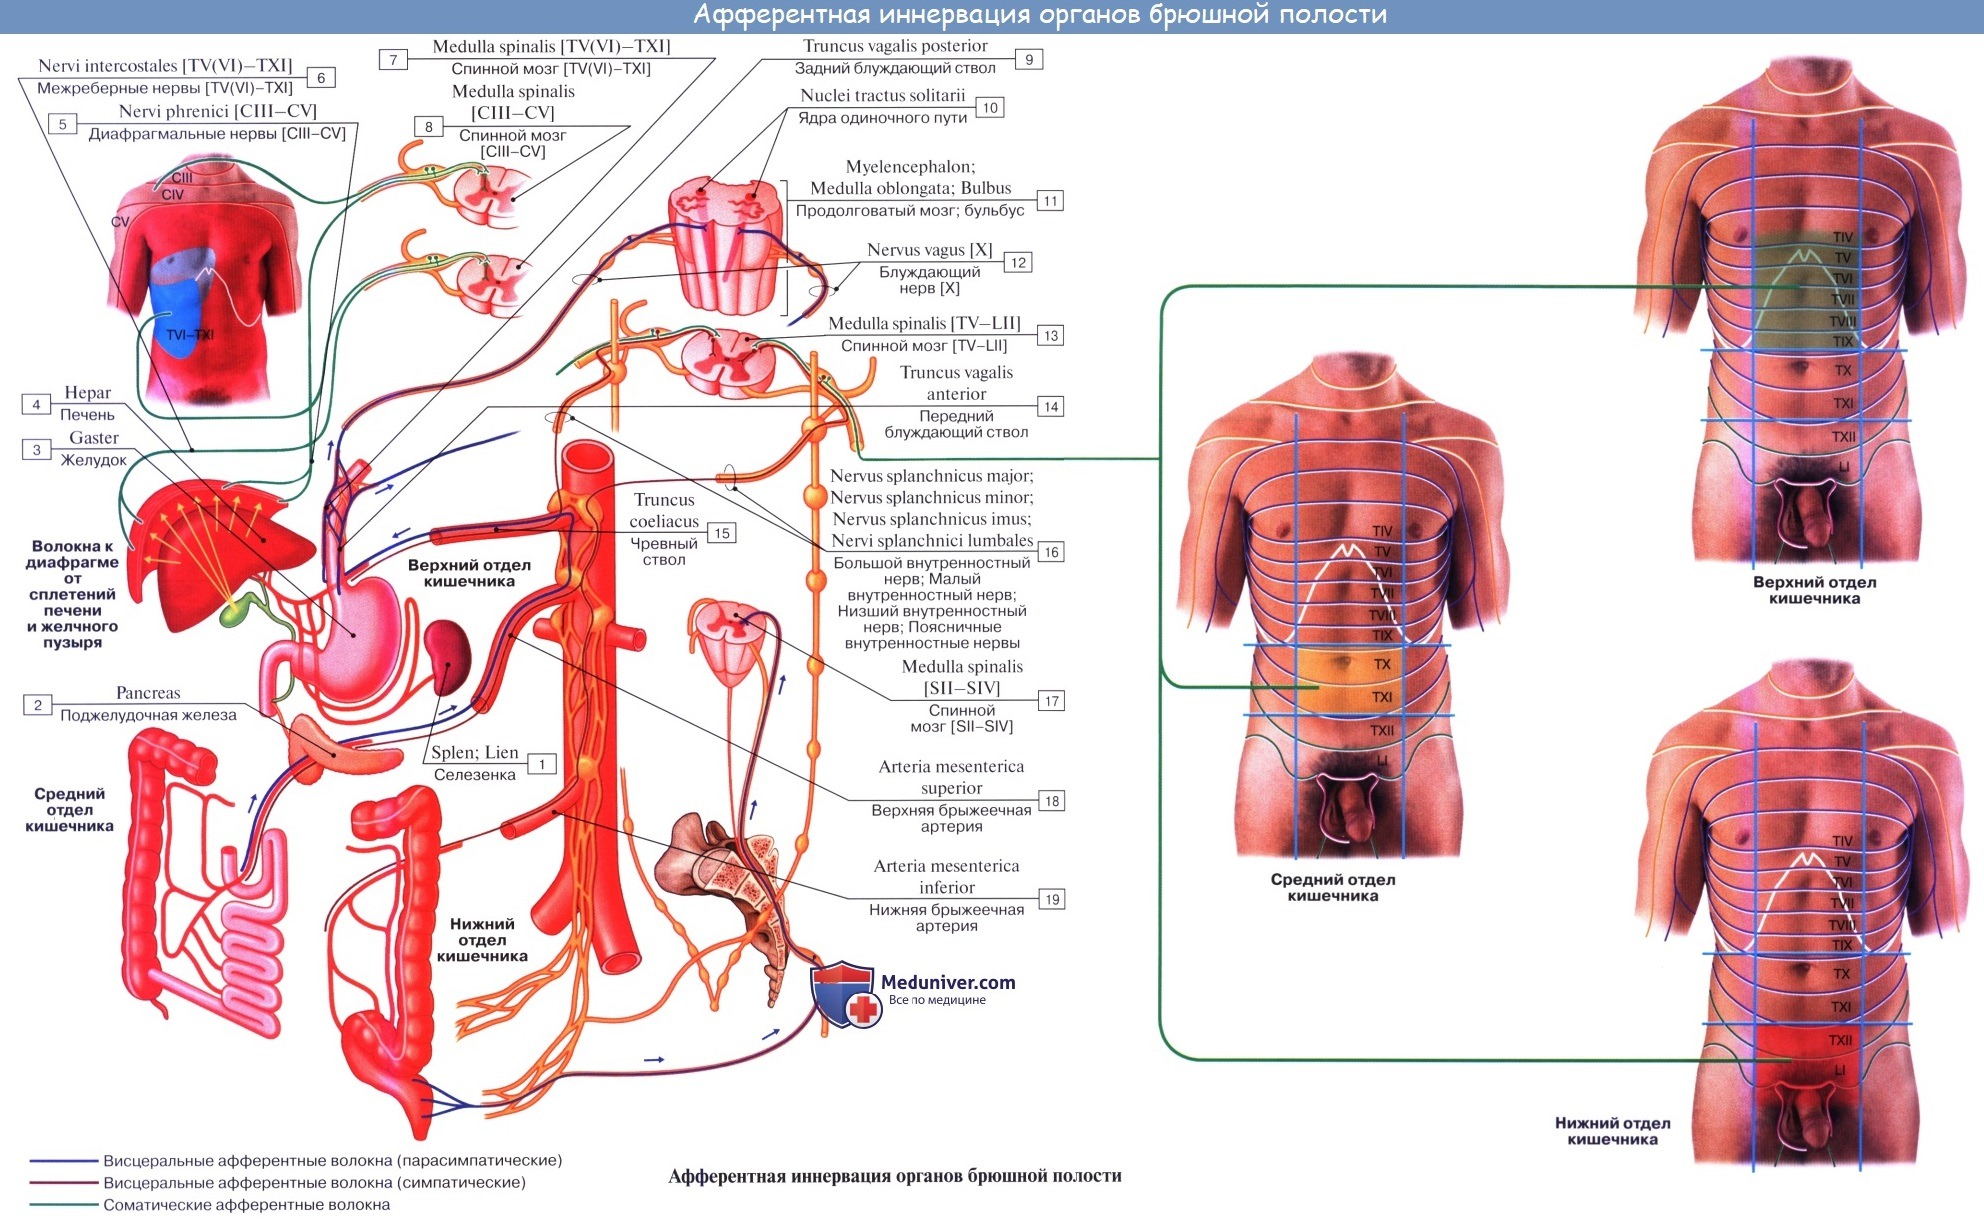 Анатомия: Единство вегетативной и центральной нервной системы. Зоны Захарьина — Геда